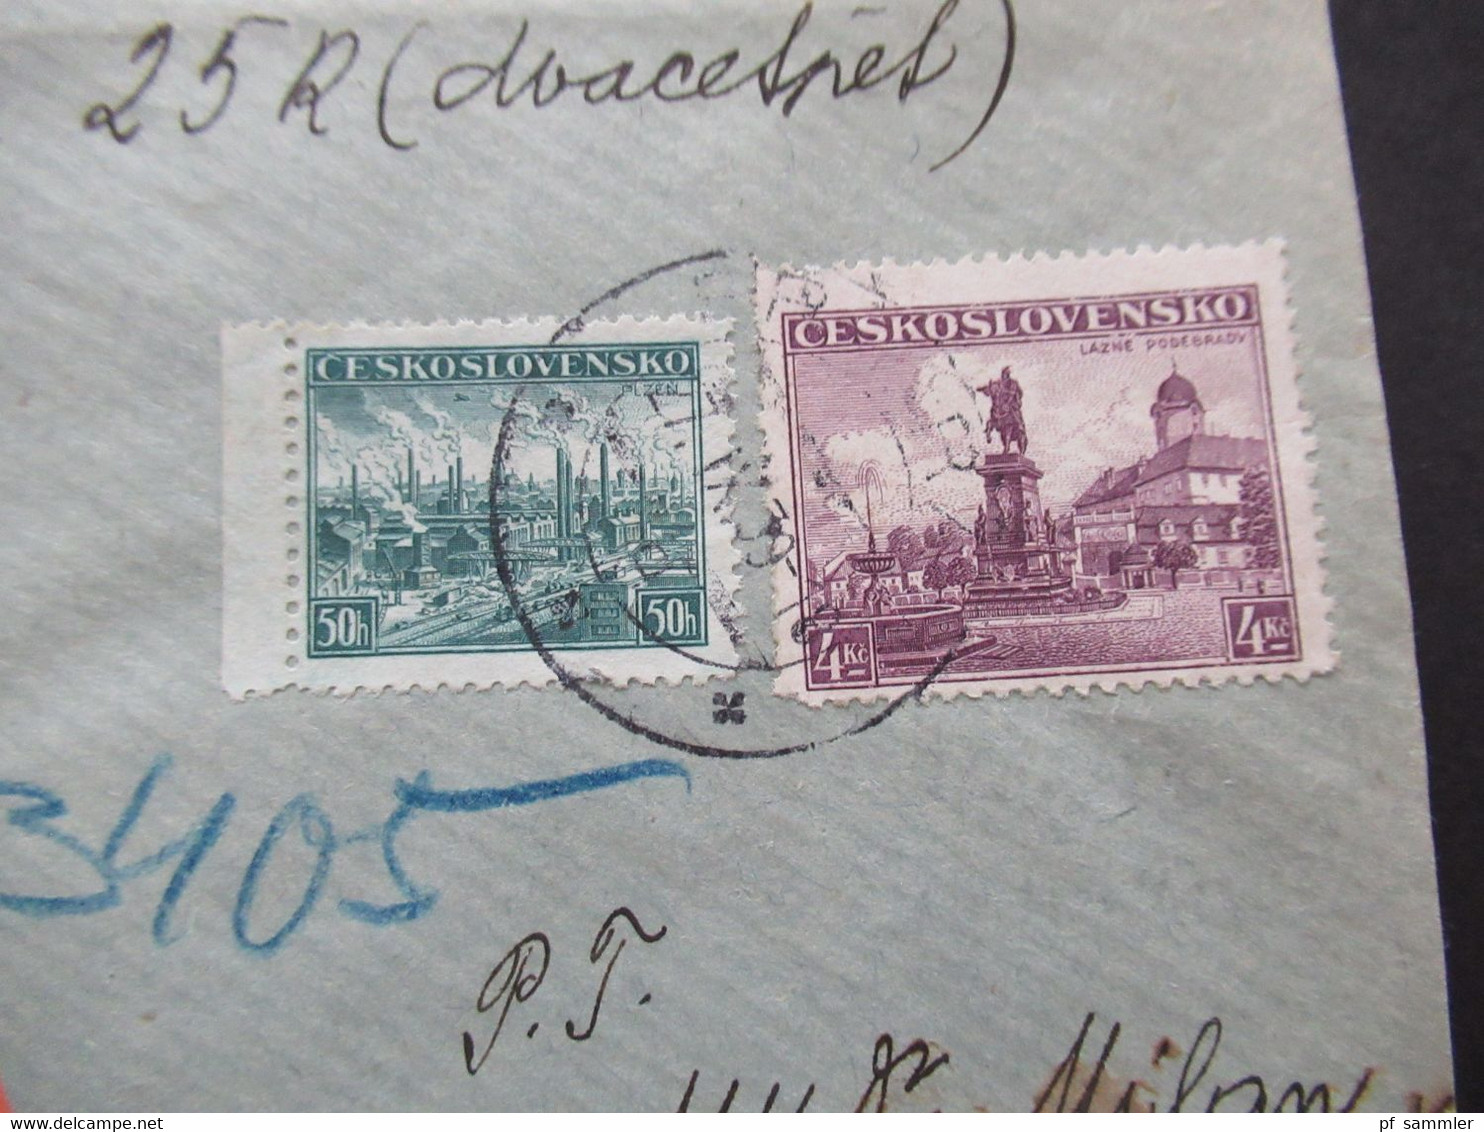 CSSR 27.9.1939 Protektorat Mitläufer Böhmen Und Mähren Einschreiben Dobirka Remboursement Pribram - Prag - Briefe U. Dokumente